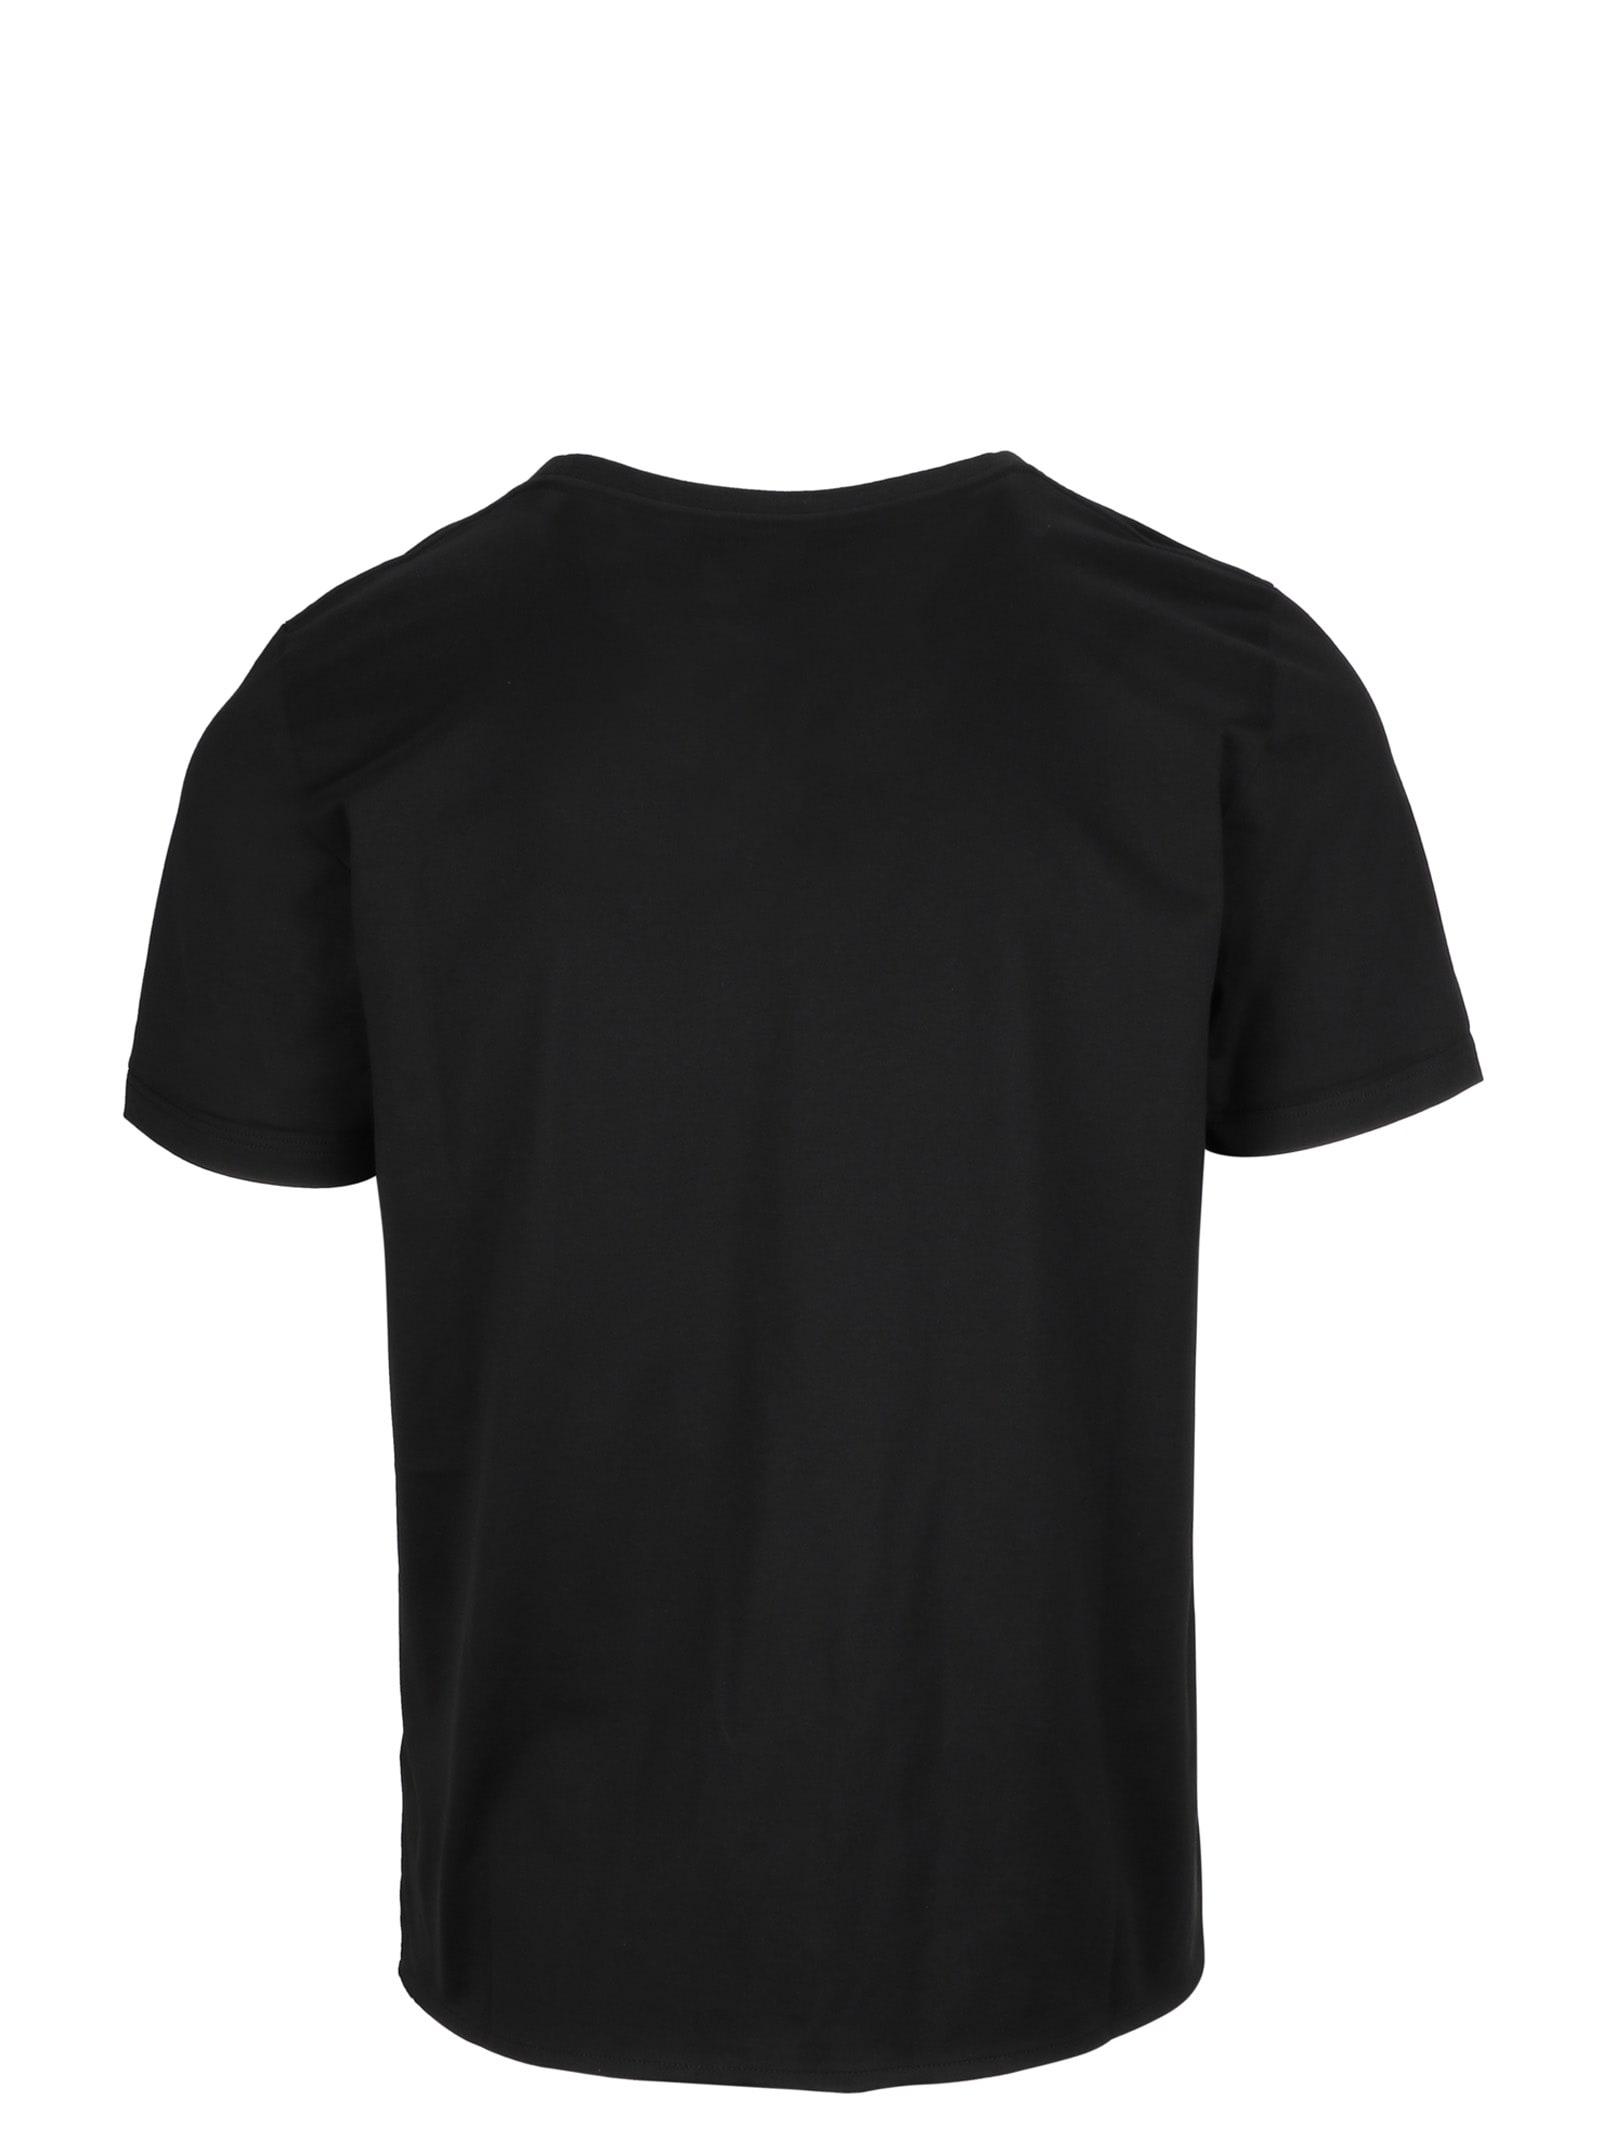 Saint Laurent Black Cotton T-shirt With Logo Print | ModeSens